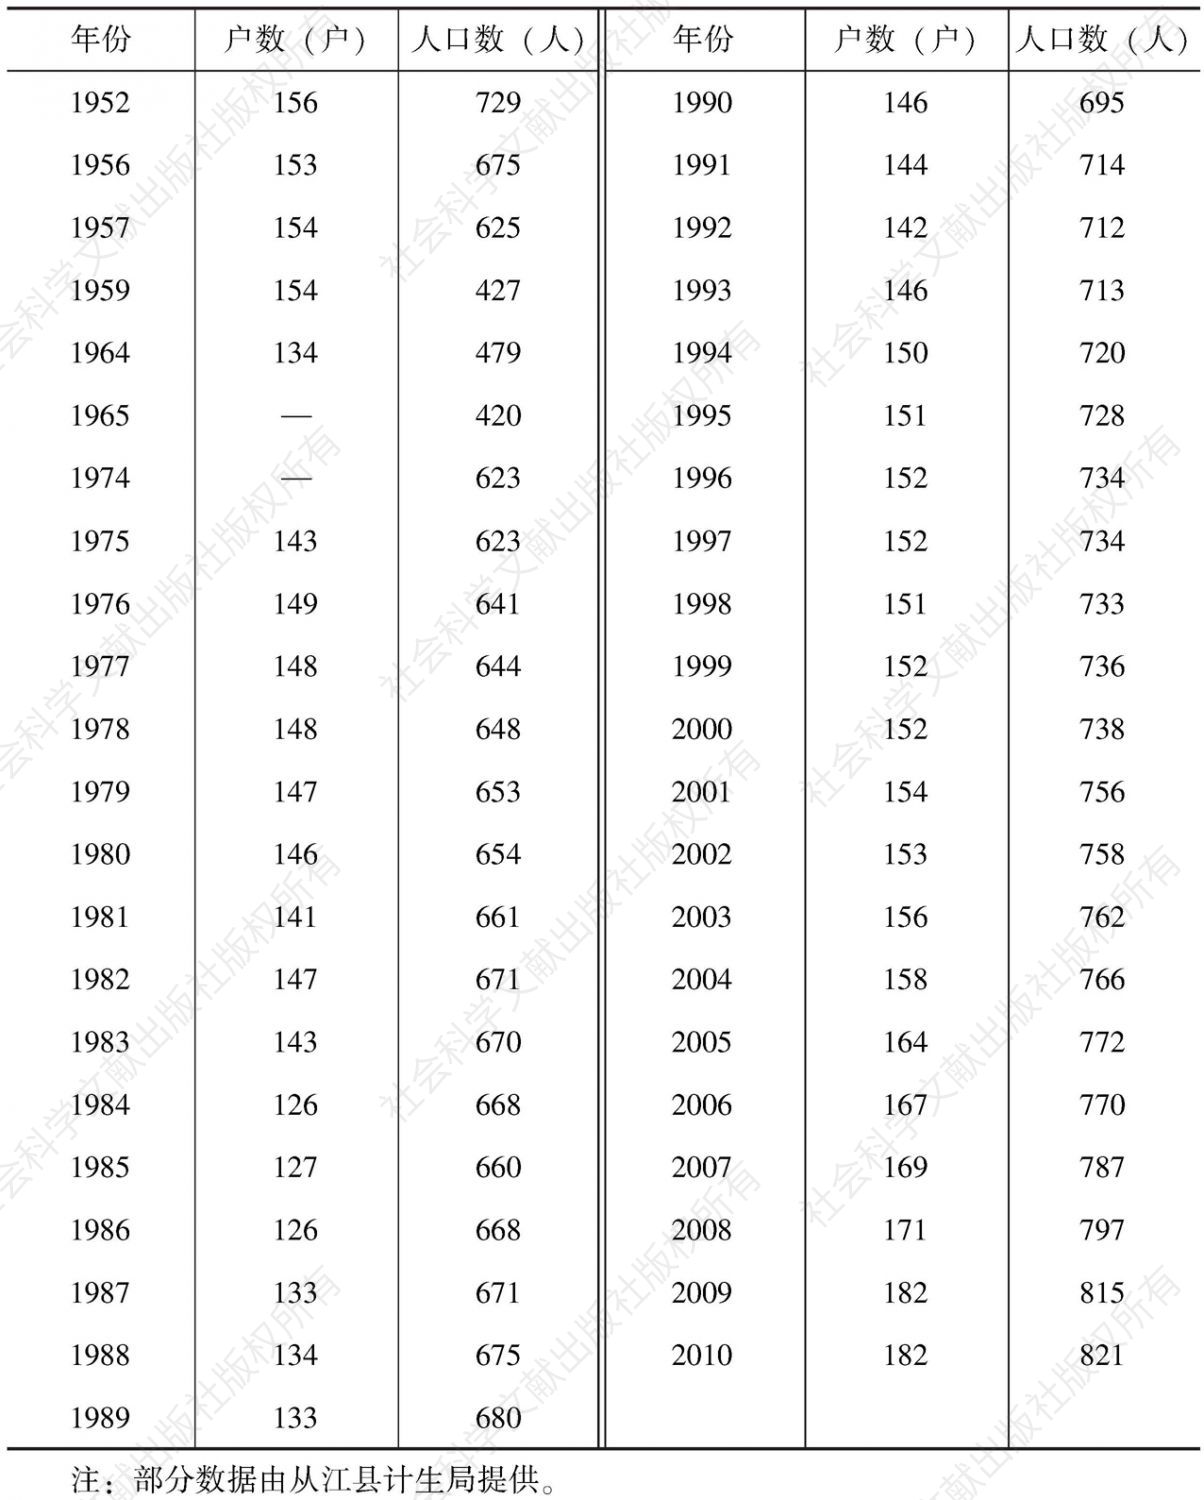 表4-1 1952年至2010年人口变动情况